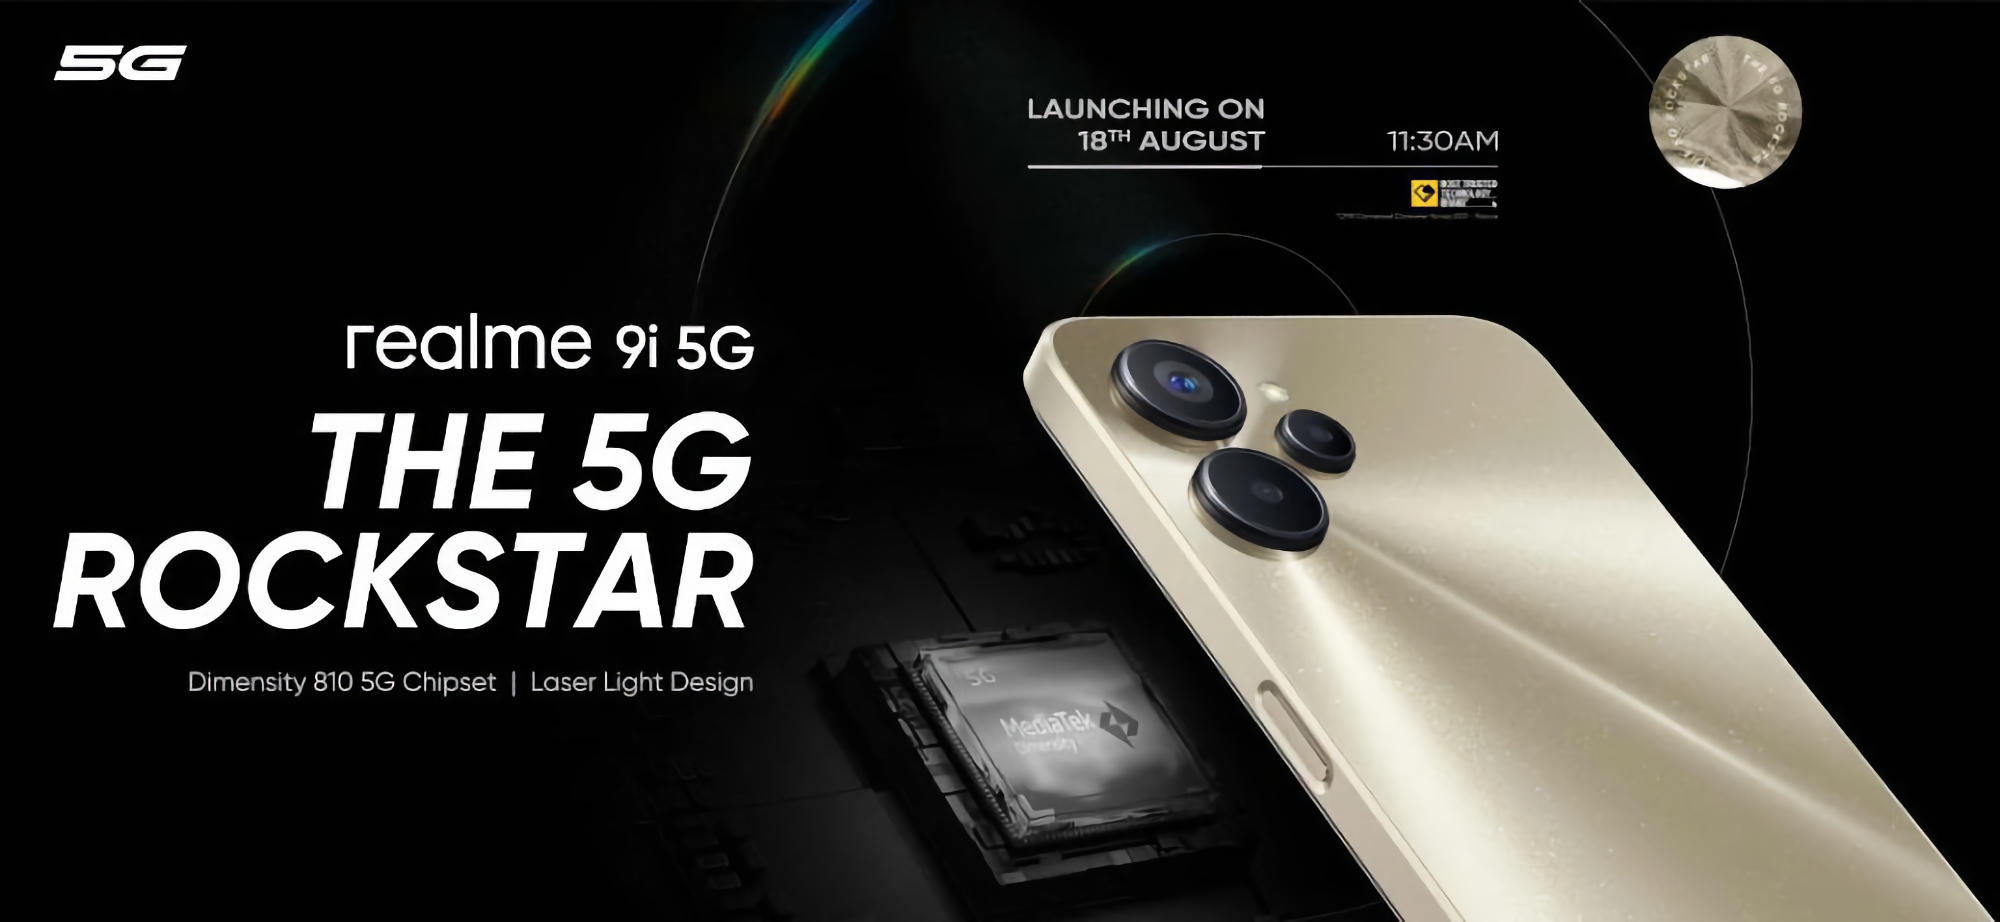 le Realme 9i 5G, équipé de la puce MediaTek Dimensity 810 et d'un triple appareil photo, sera dévoilé le 18 août